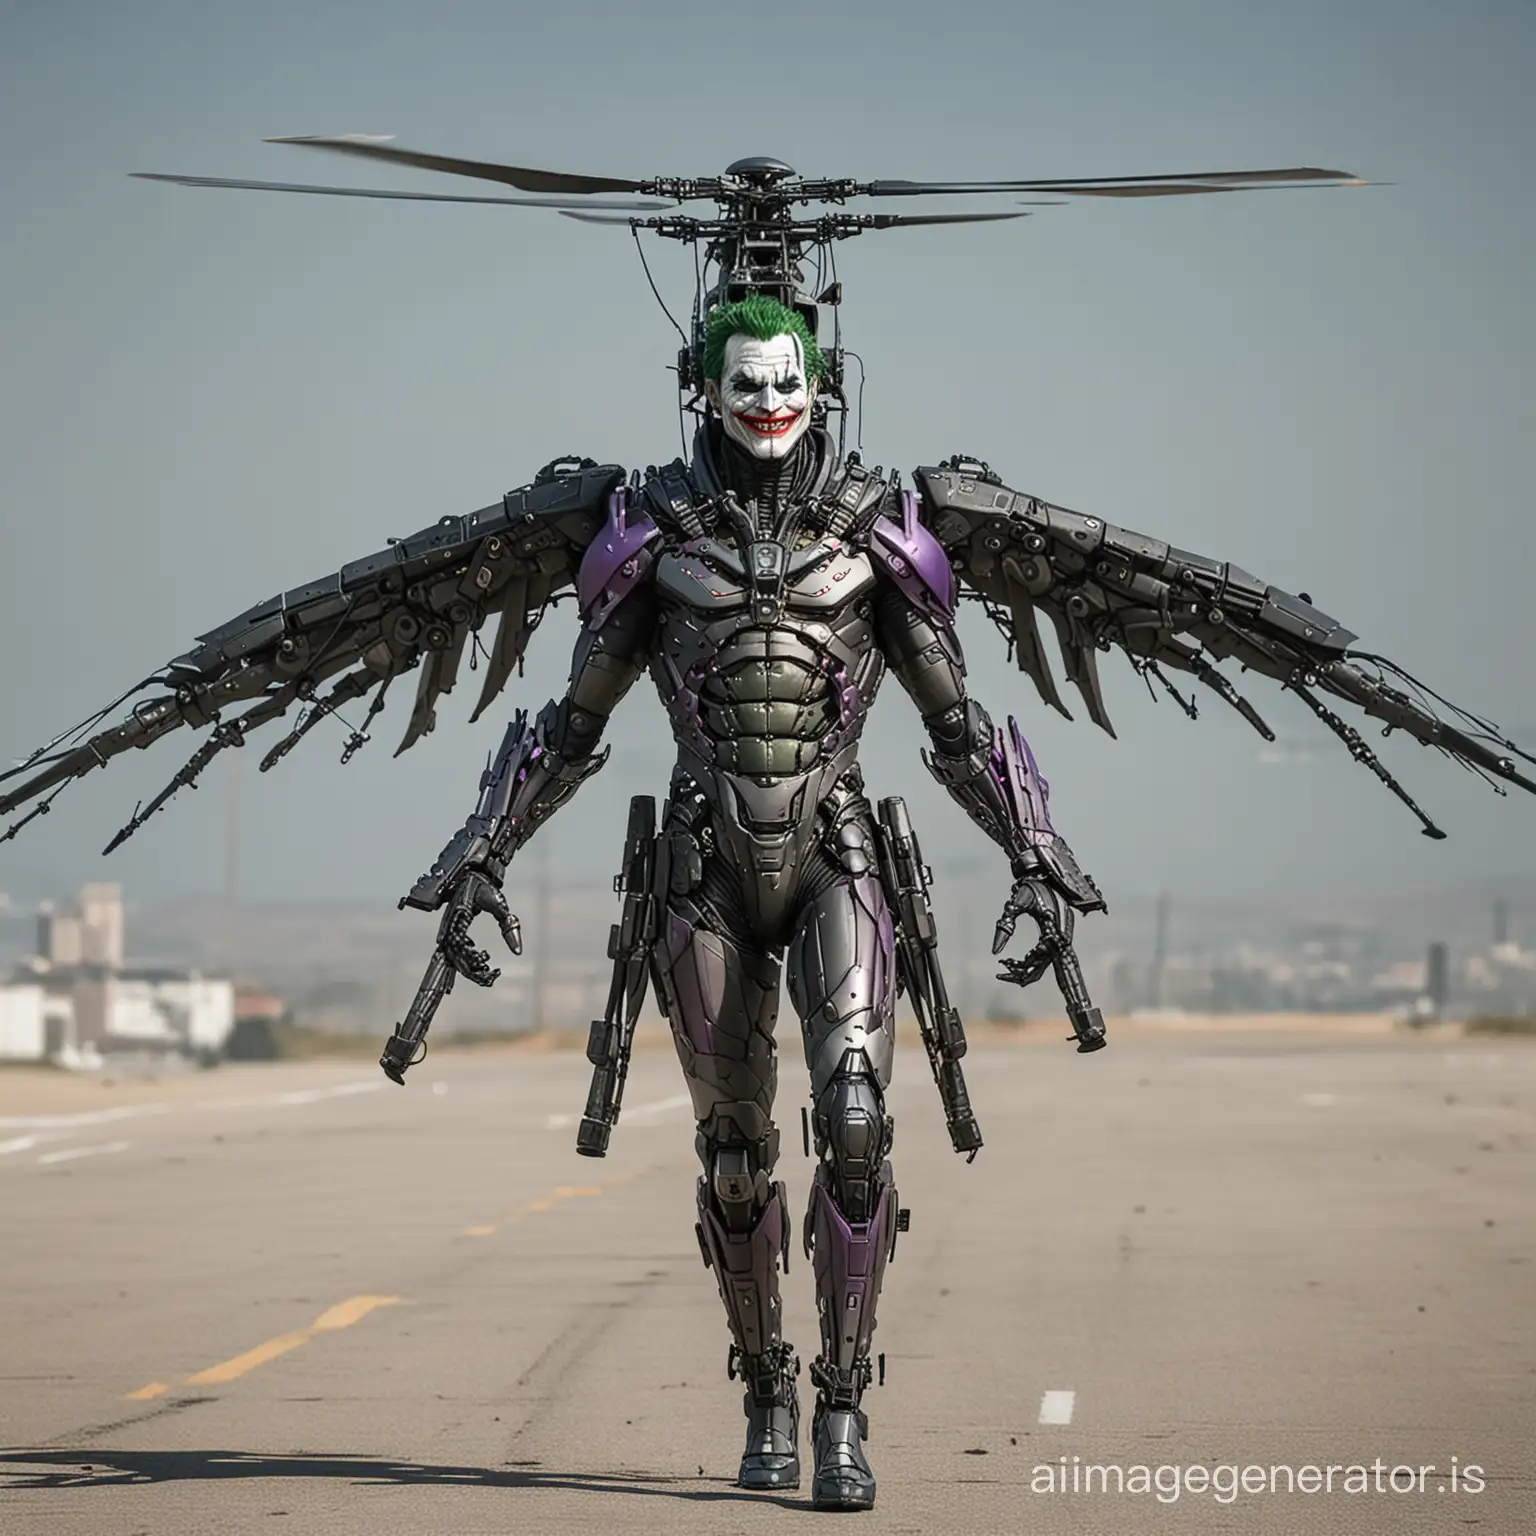 humanoid helicopter joker